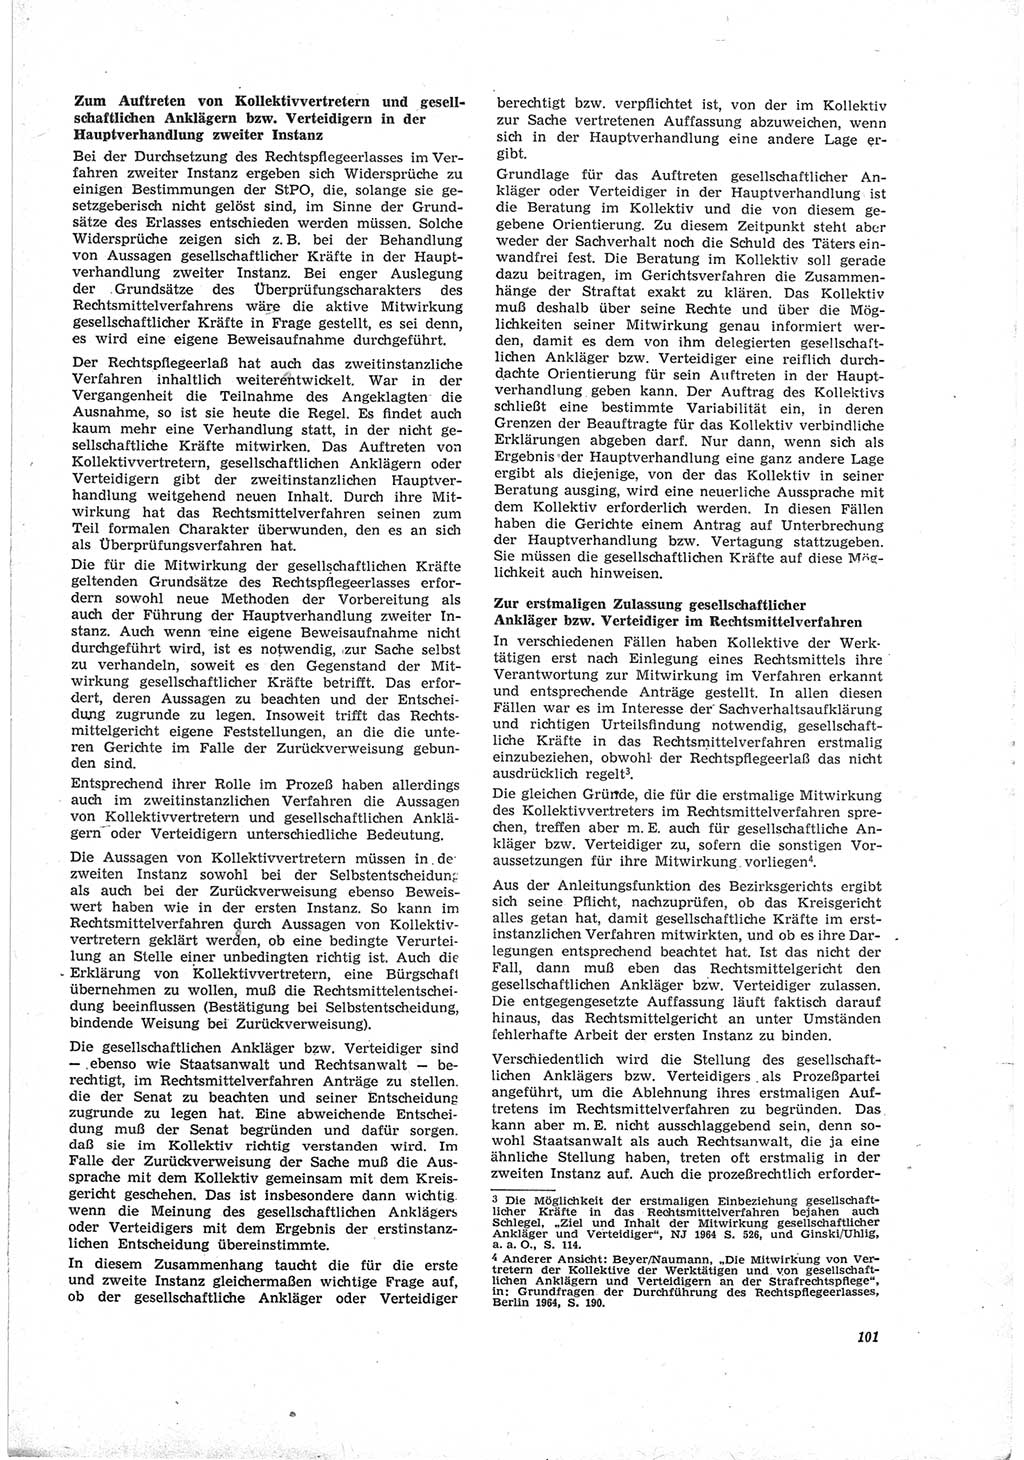 Neue Justiz (NJ), Zeitschrift für Recht und Rechtswissenschaft [Deutsche Demokratische Republik (DDR)], 19. Jahrgang 1965, Seite 101 (NJ DDR 1965, S. 101)